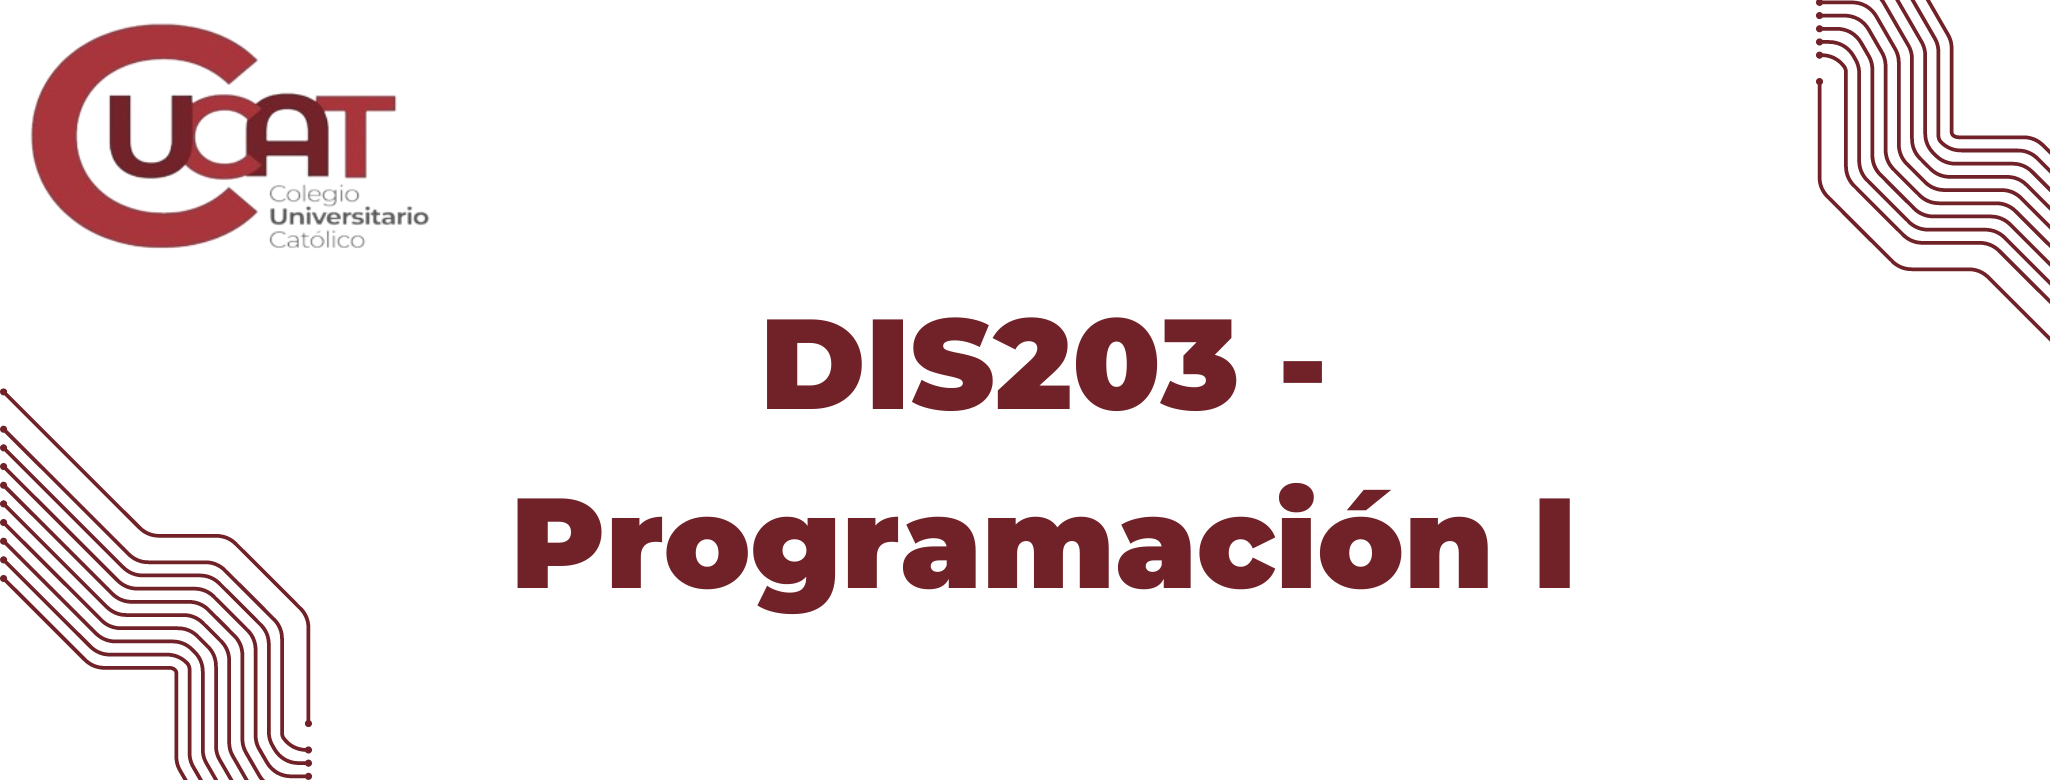 DIS203-Programación I